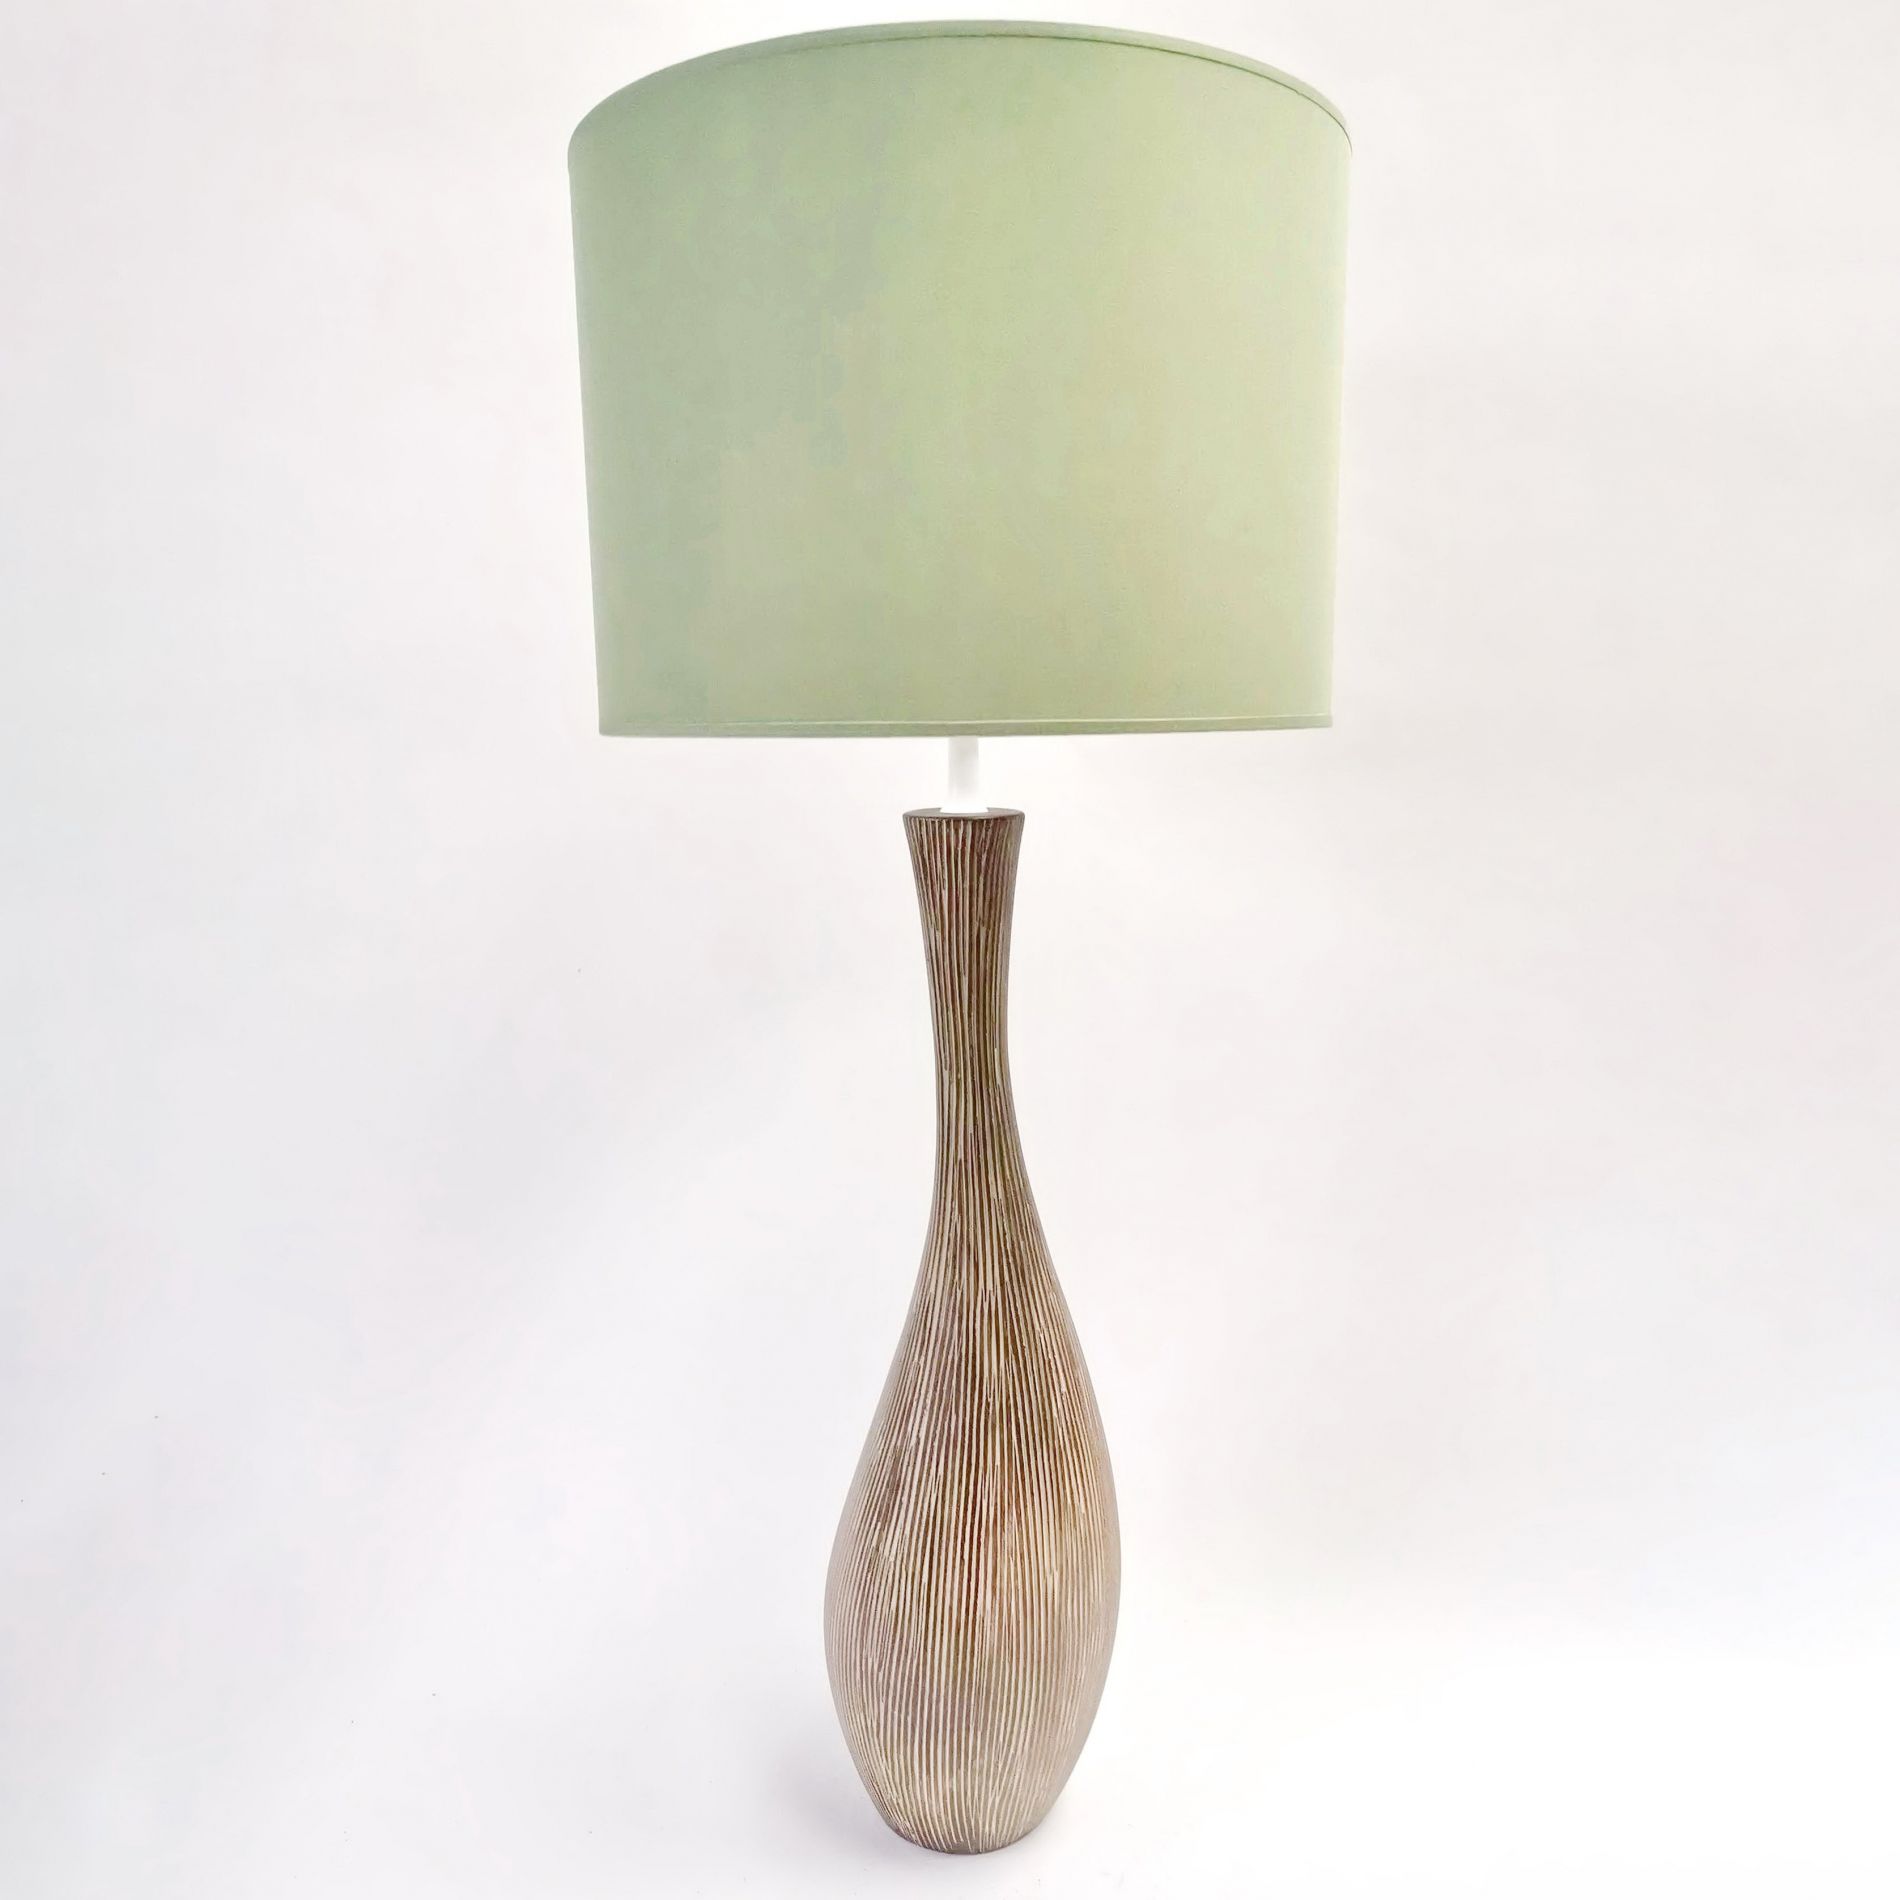 Lampe à poser AFRICA (H60cm) en céramique marron abat-jour en tissu vert